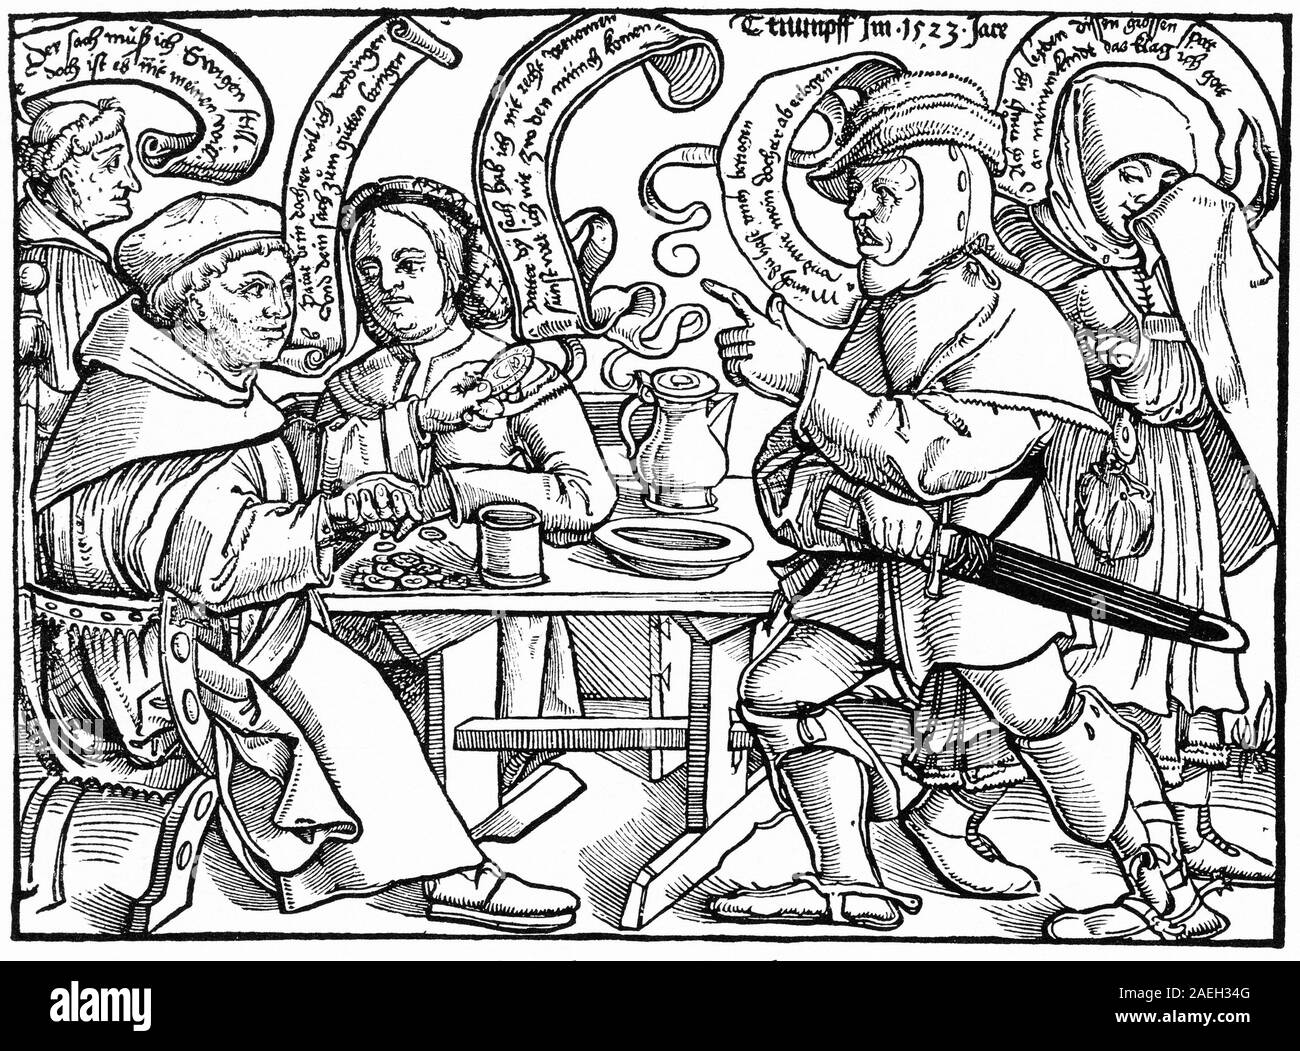 Gravure sur bois de 1523 de la propagande anti-catholique au cours de la réforme. Dans ce dessin animé, un père se casse dans le moine qui cherchent à corrompre sa fille. Le moine assis tente de corrompre le père avec l'argent, tandis que le moine à l'extrême gauche dit "Cette chose m'oblige à être toujours, même si ce n'est pas ma volonté". Banque D'Images